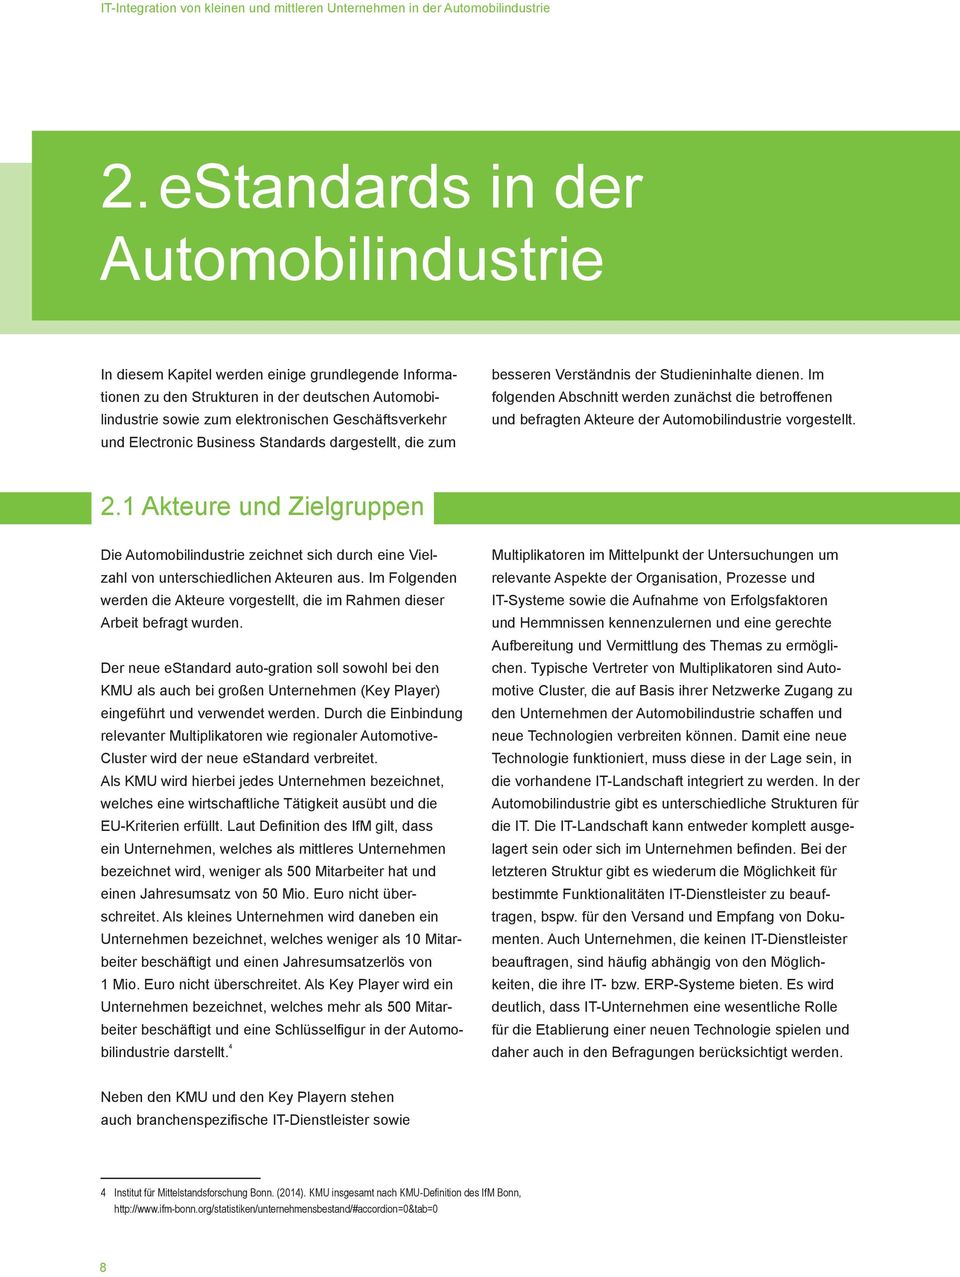 Electronic Business Standards dargestellt, die zum besseren Verständnis der Studieninhalte dienen.